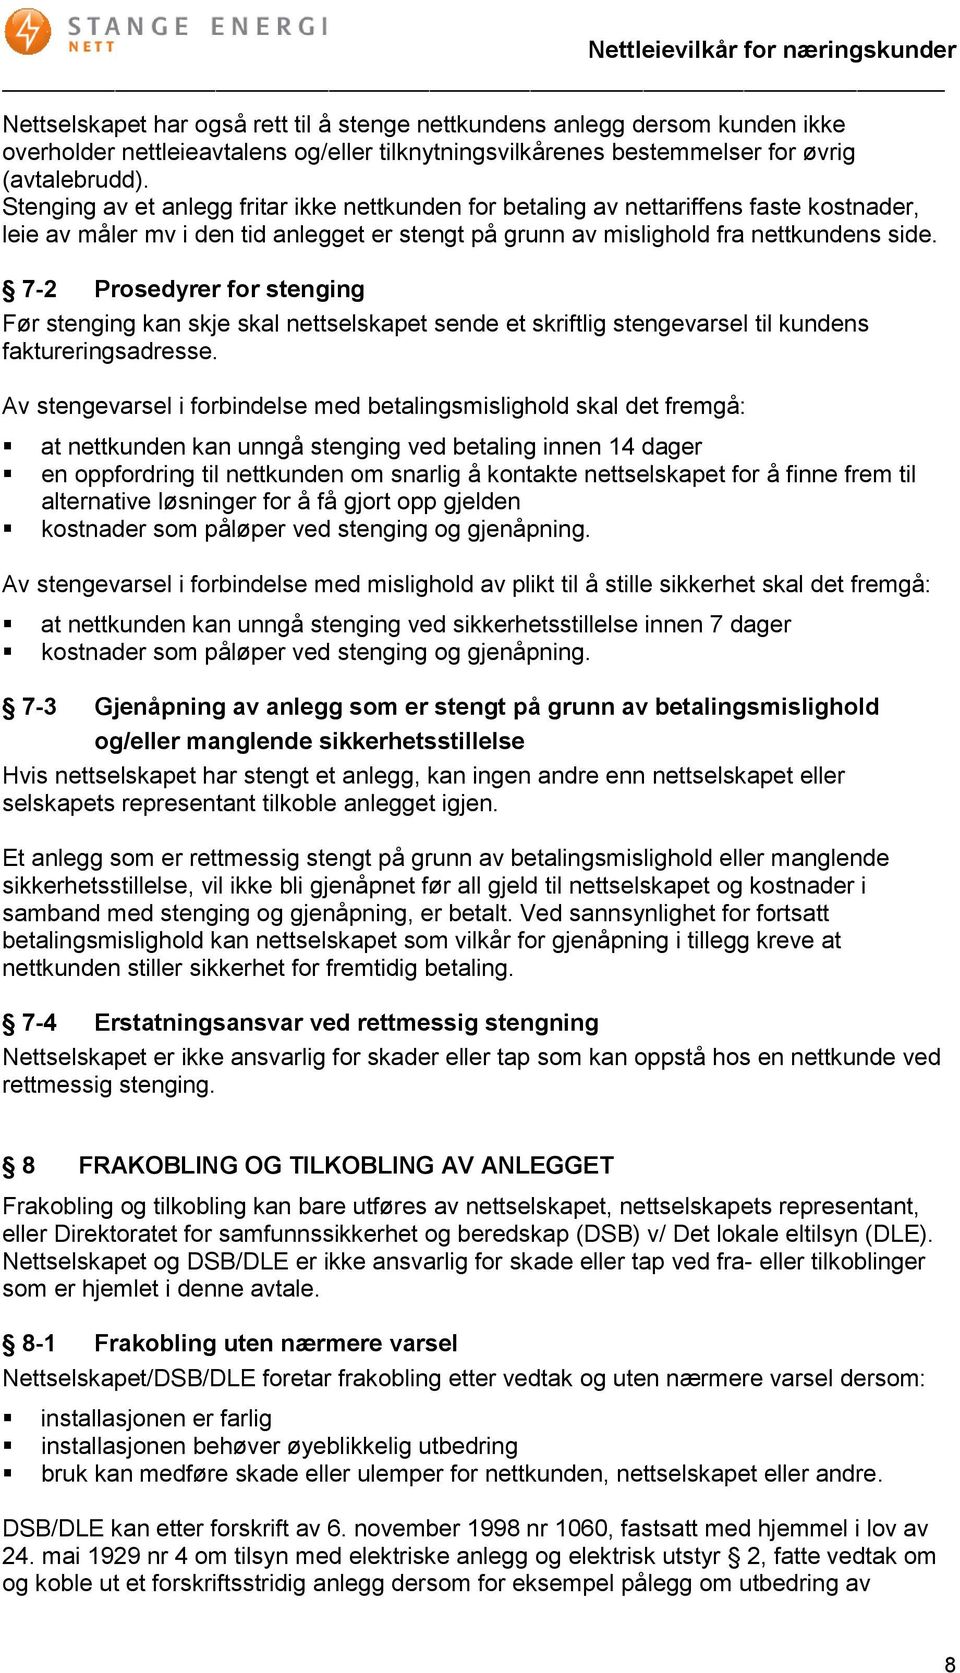 7-2 Prosedyrer for stenging Før stenging kan skje skal nettselskapet sende et skriftlig stengevarsel til kundens faktureringsadresse.